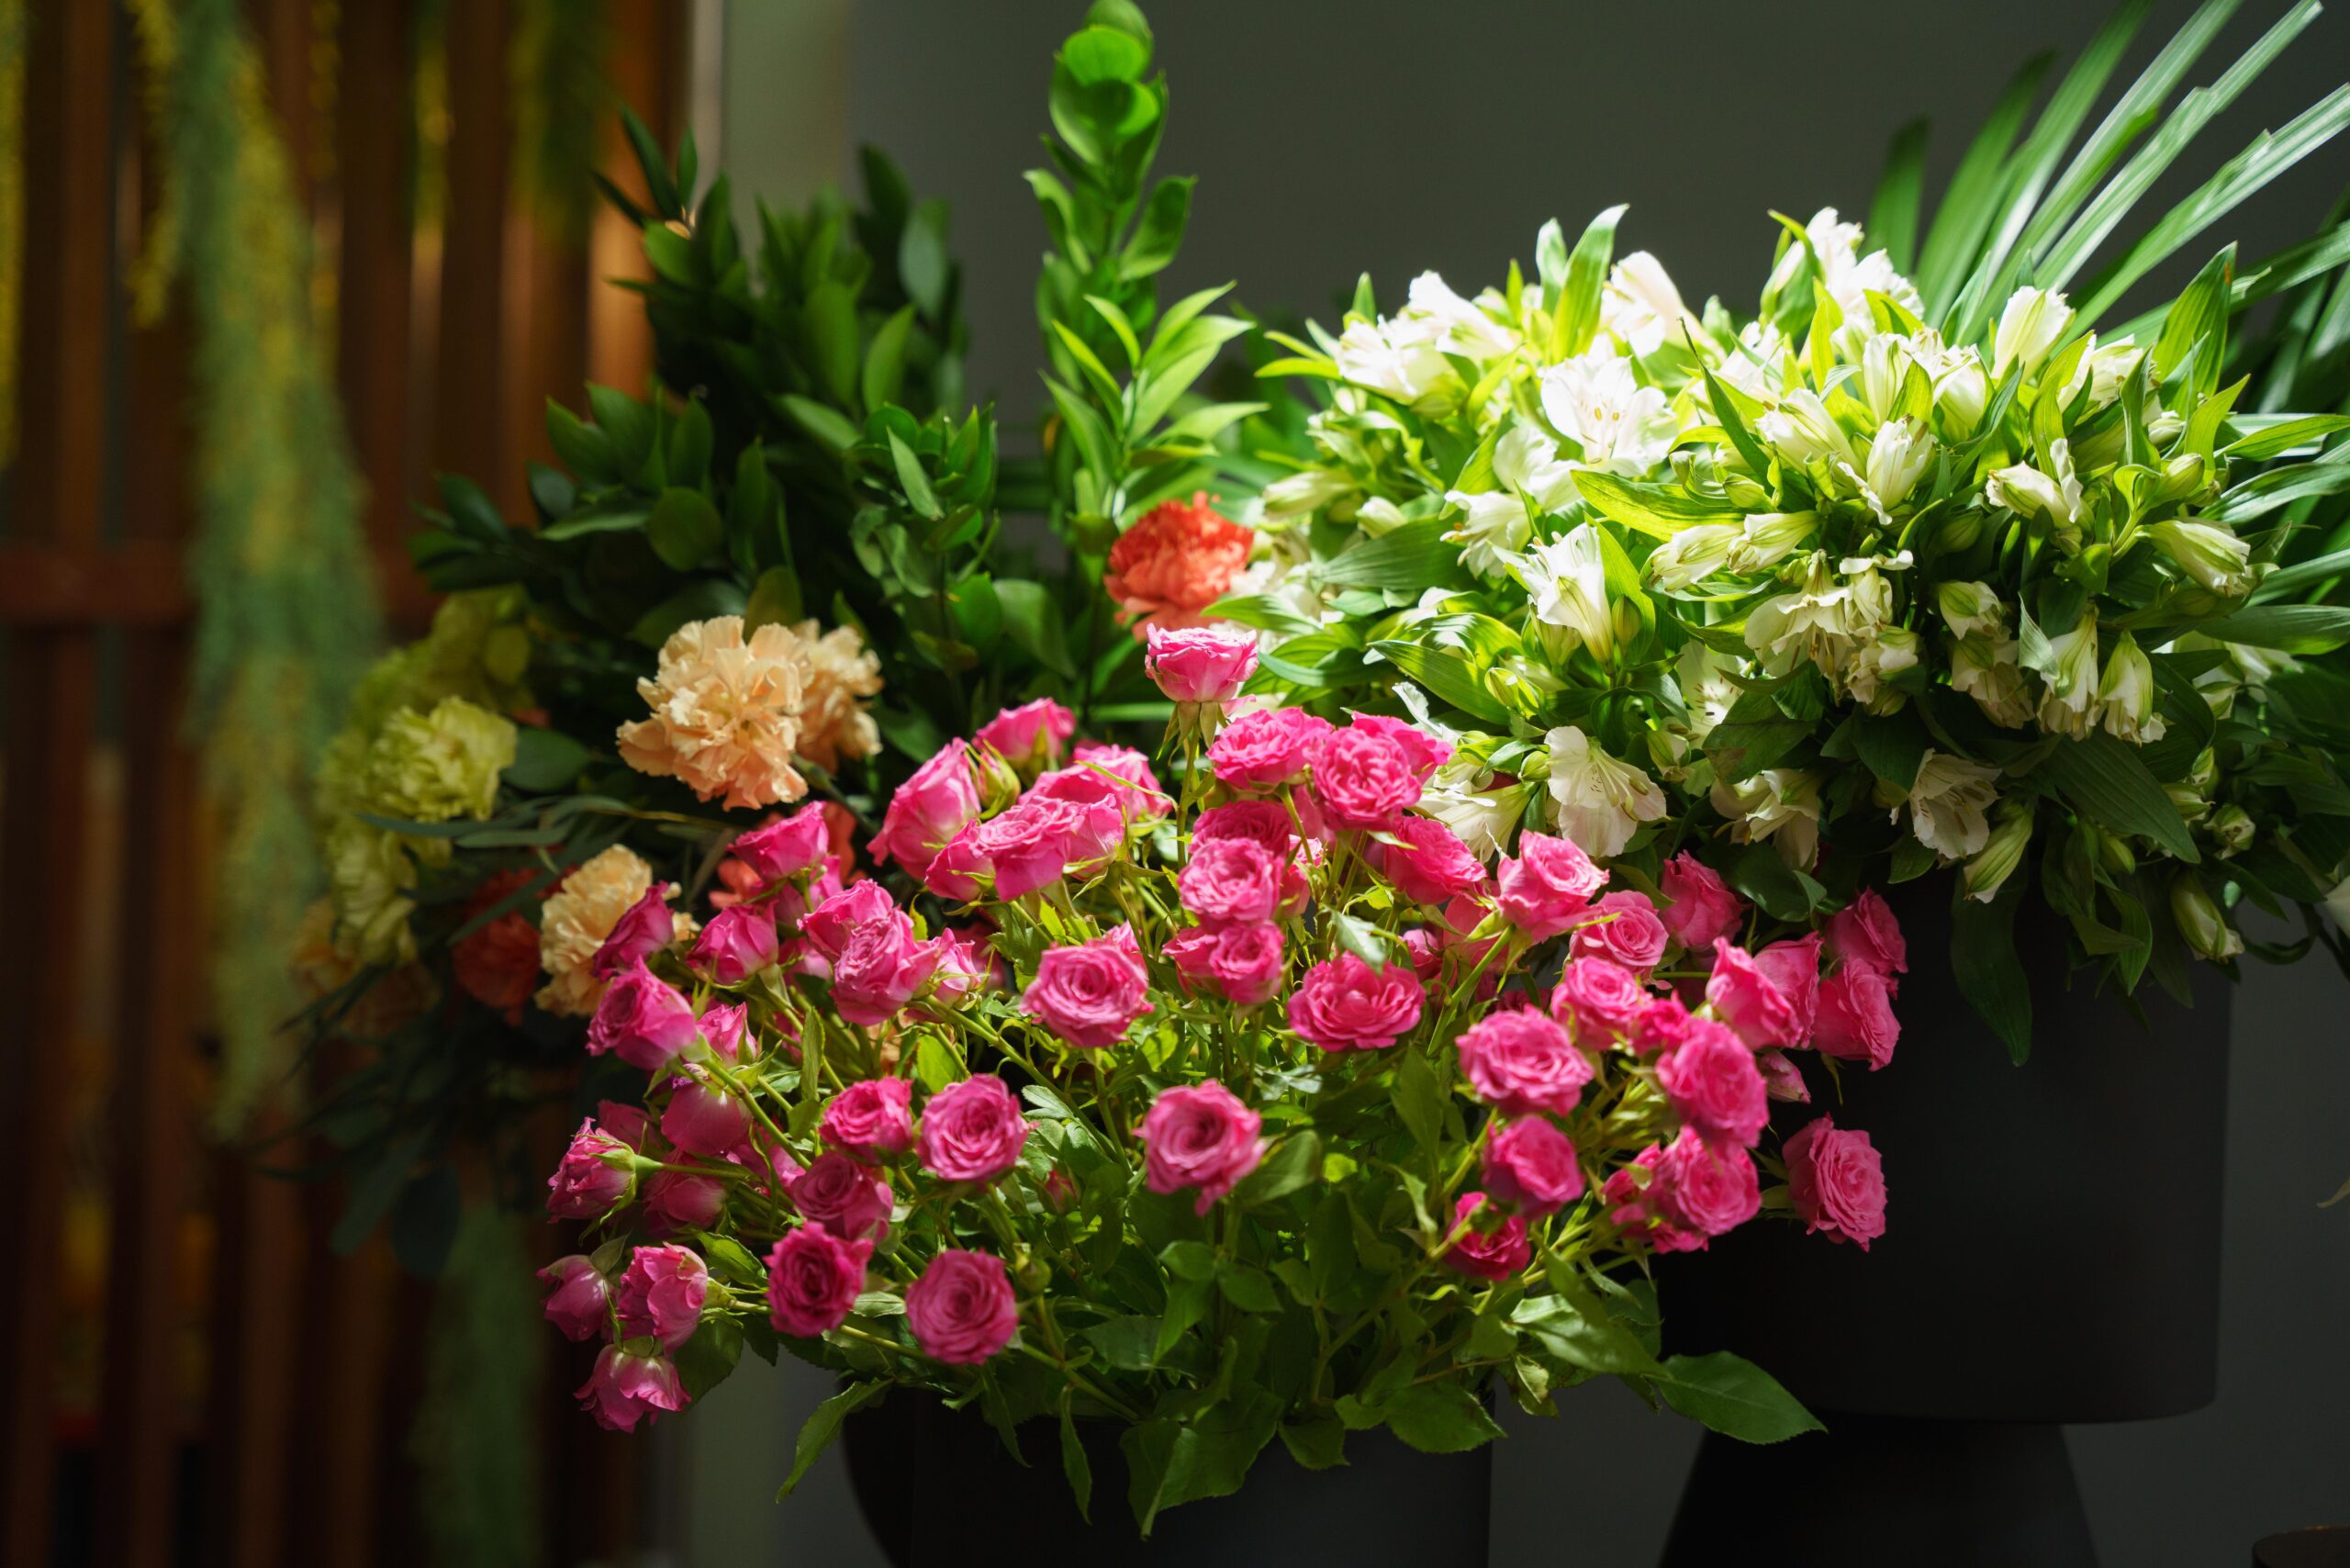 Floral Arrangements